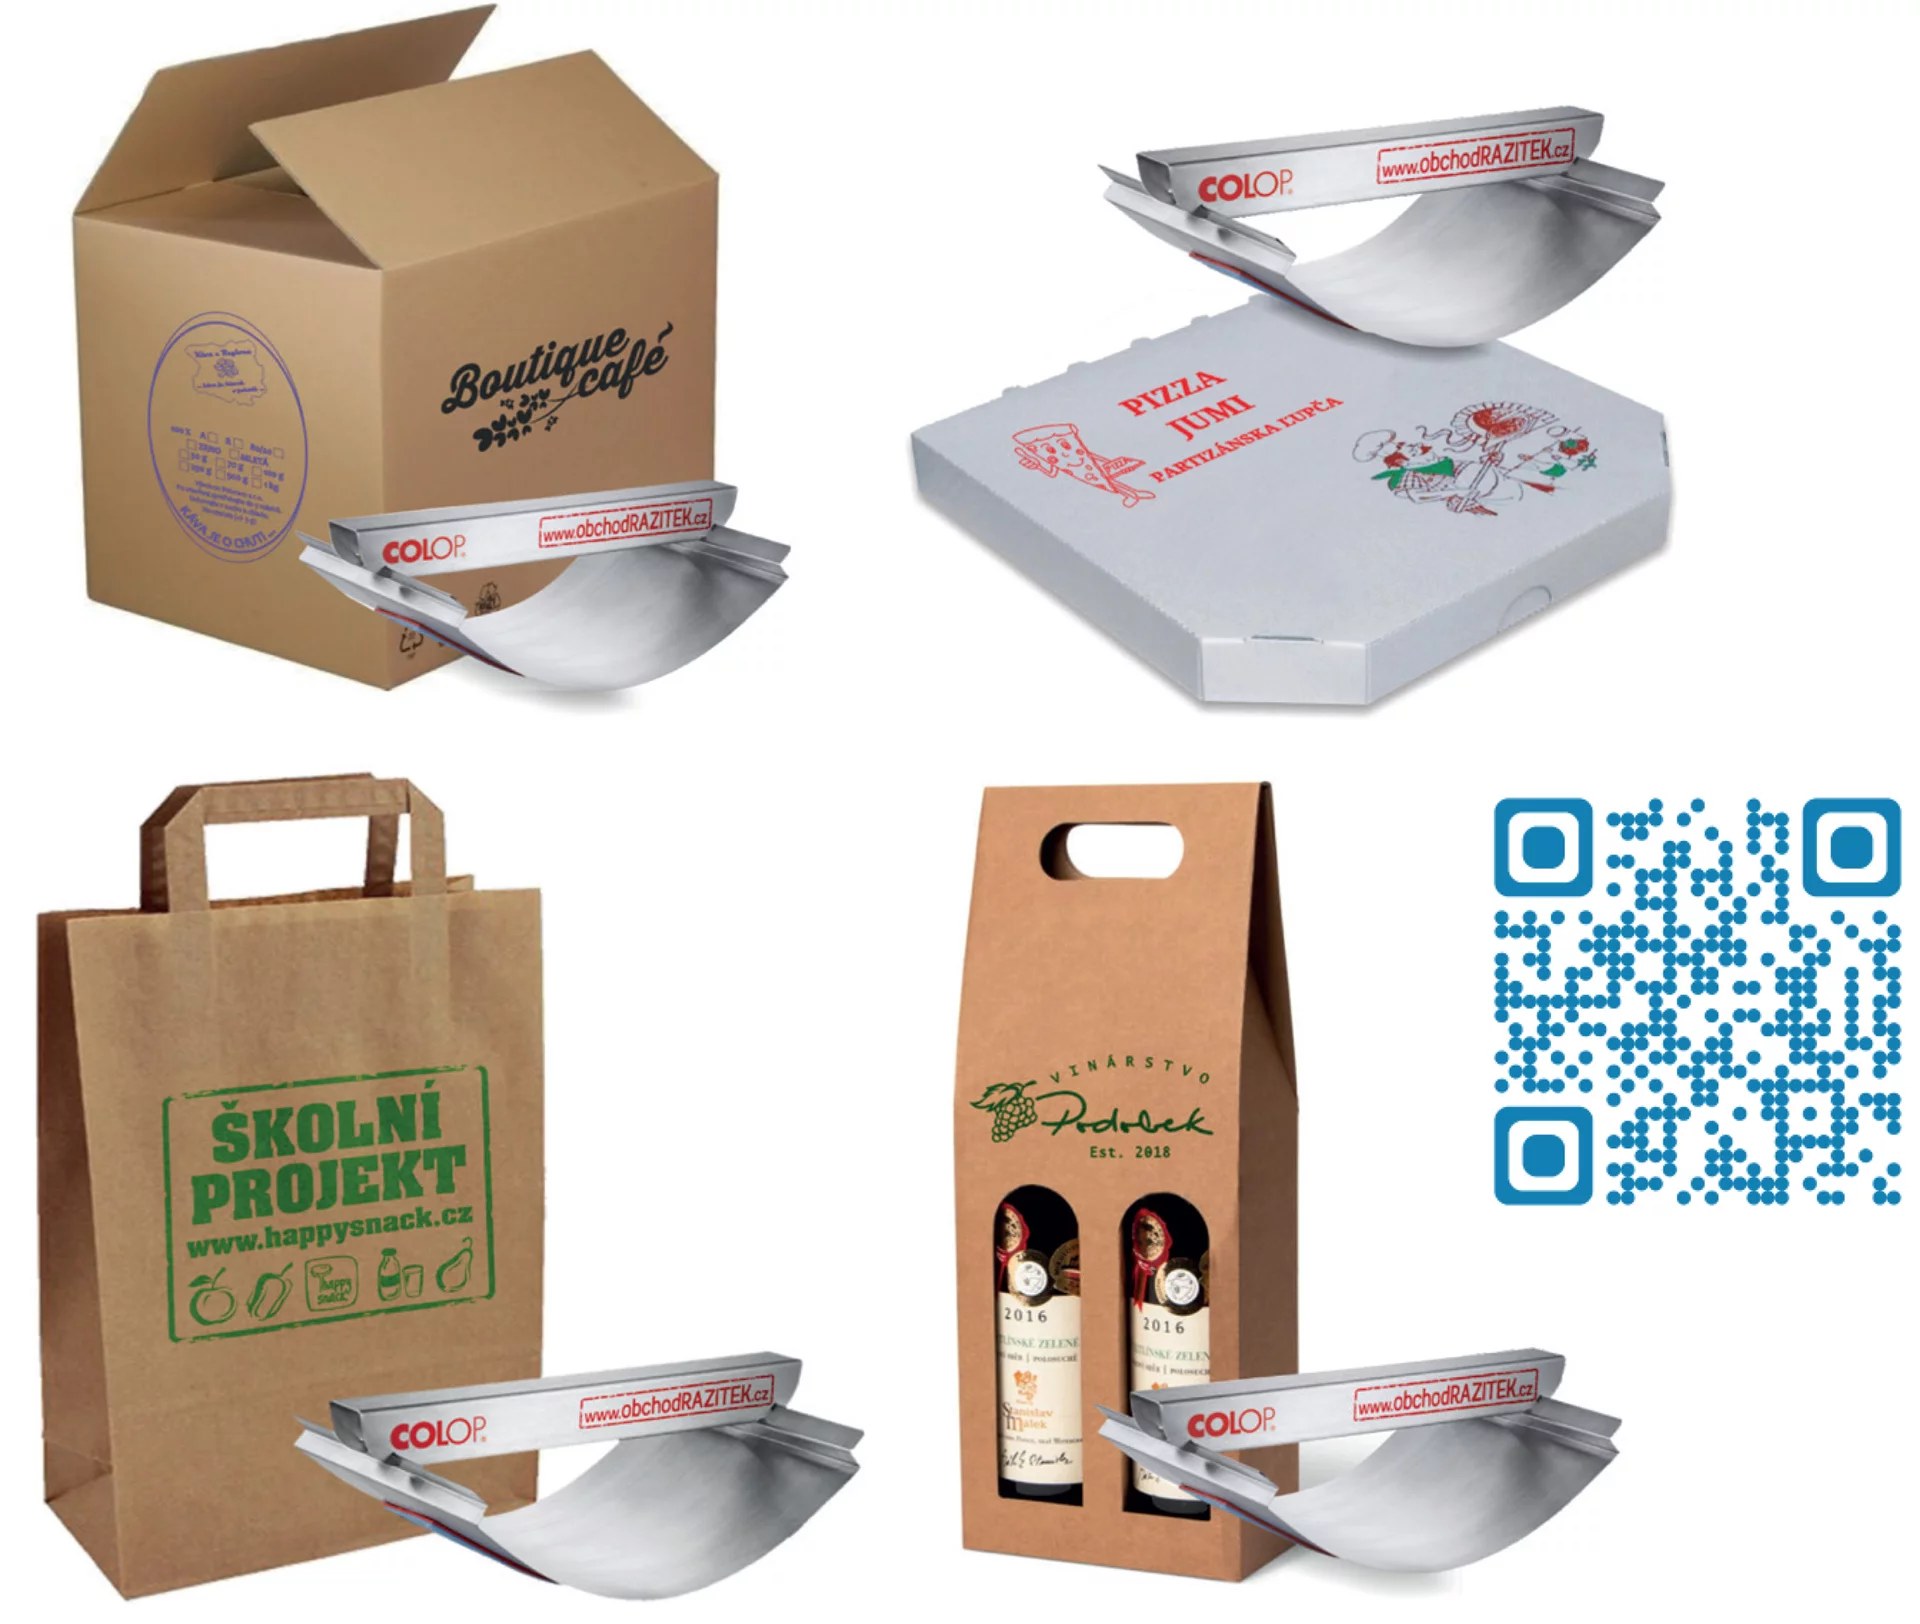 Velkoformátové kolébkové XXL razítko na potisk krabic, kartonů, papírových a plastových tašek